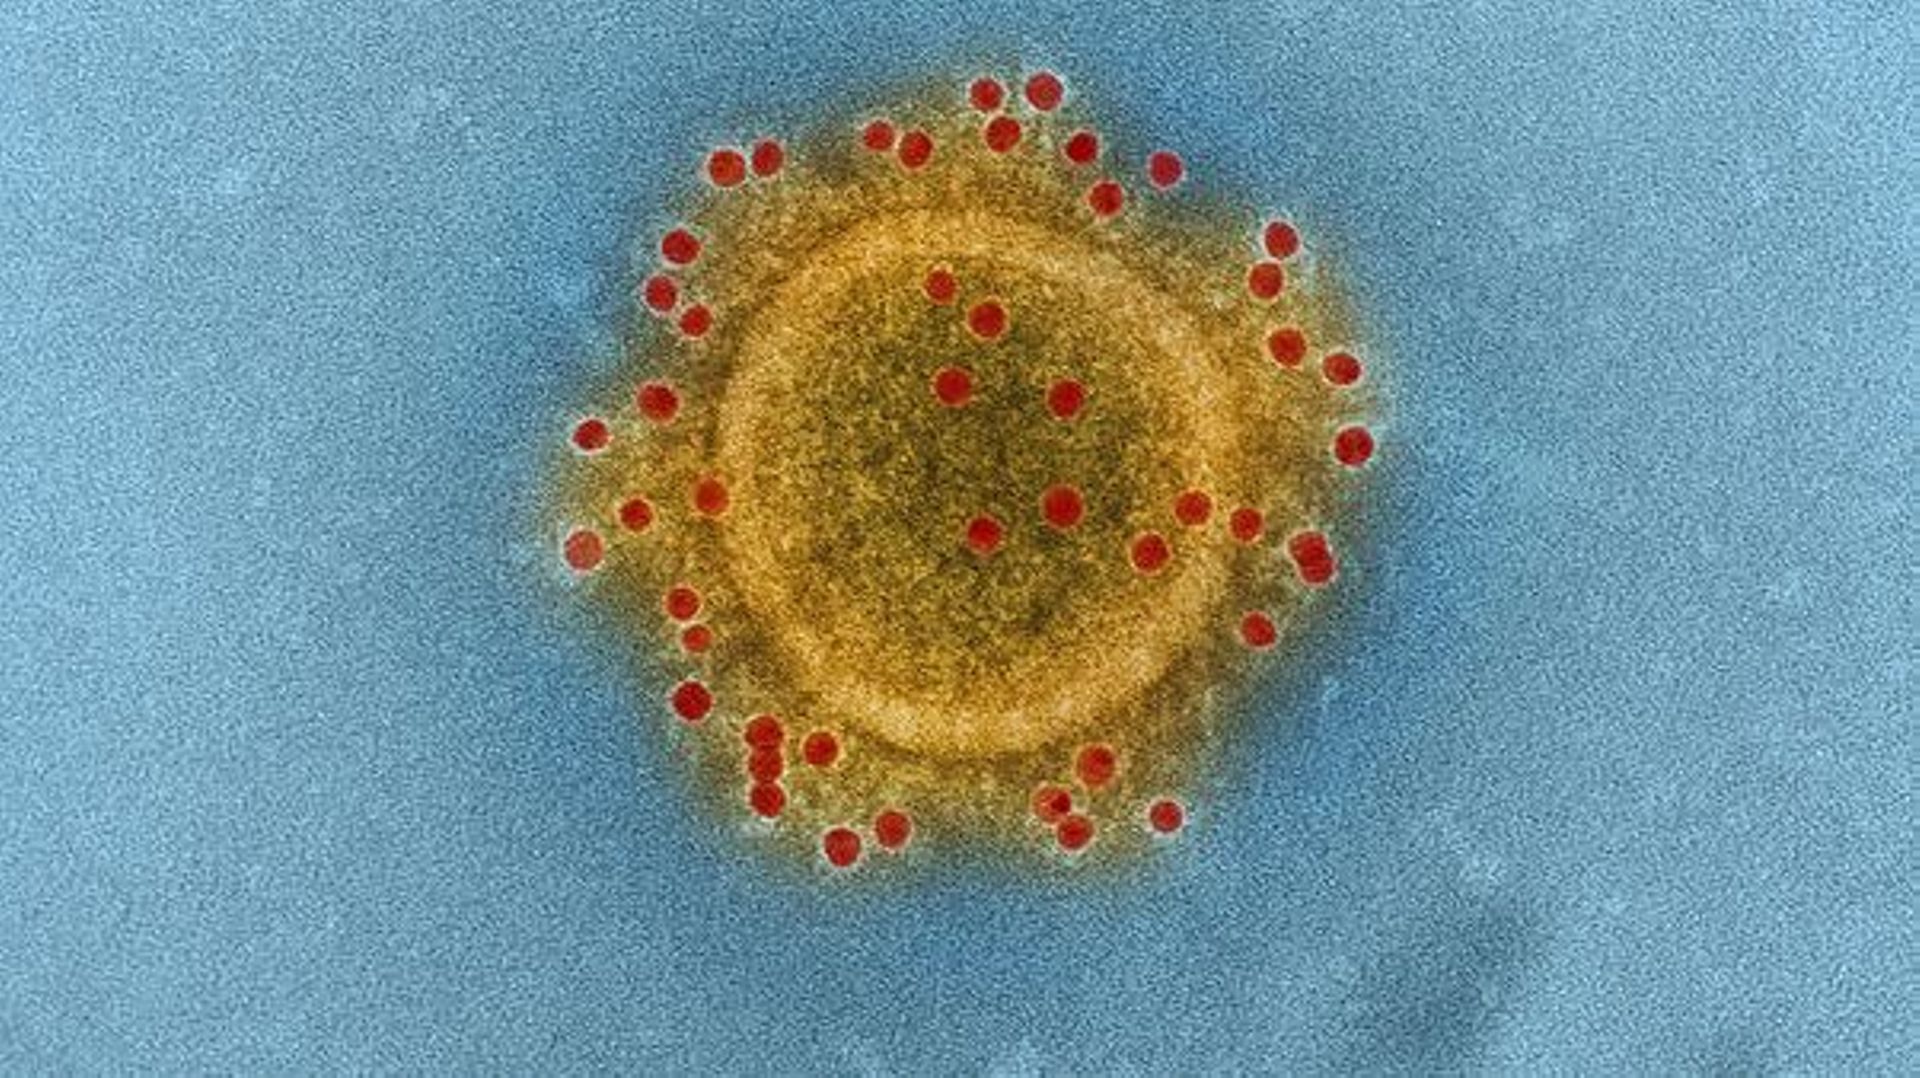 Le coronavirus répand avec lui son lot de fausses informations et rumeurs